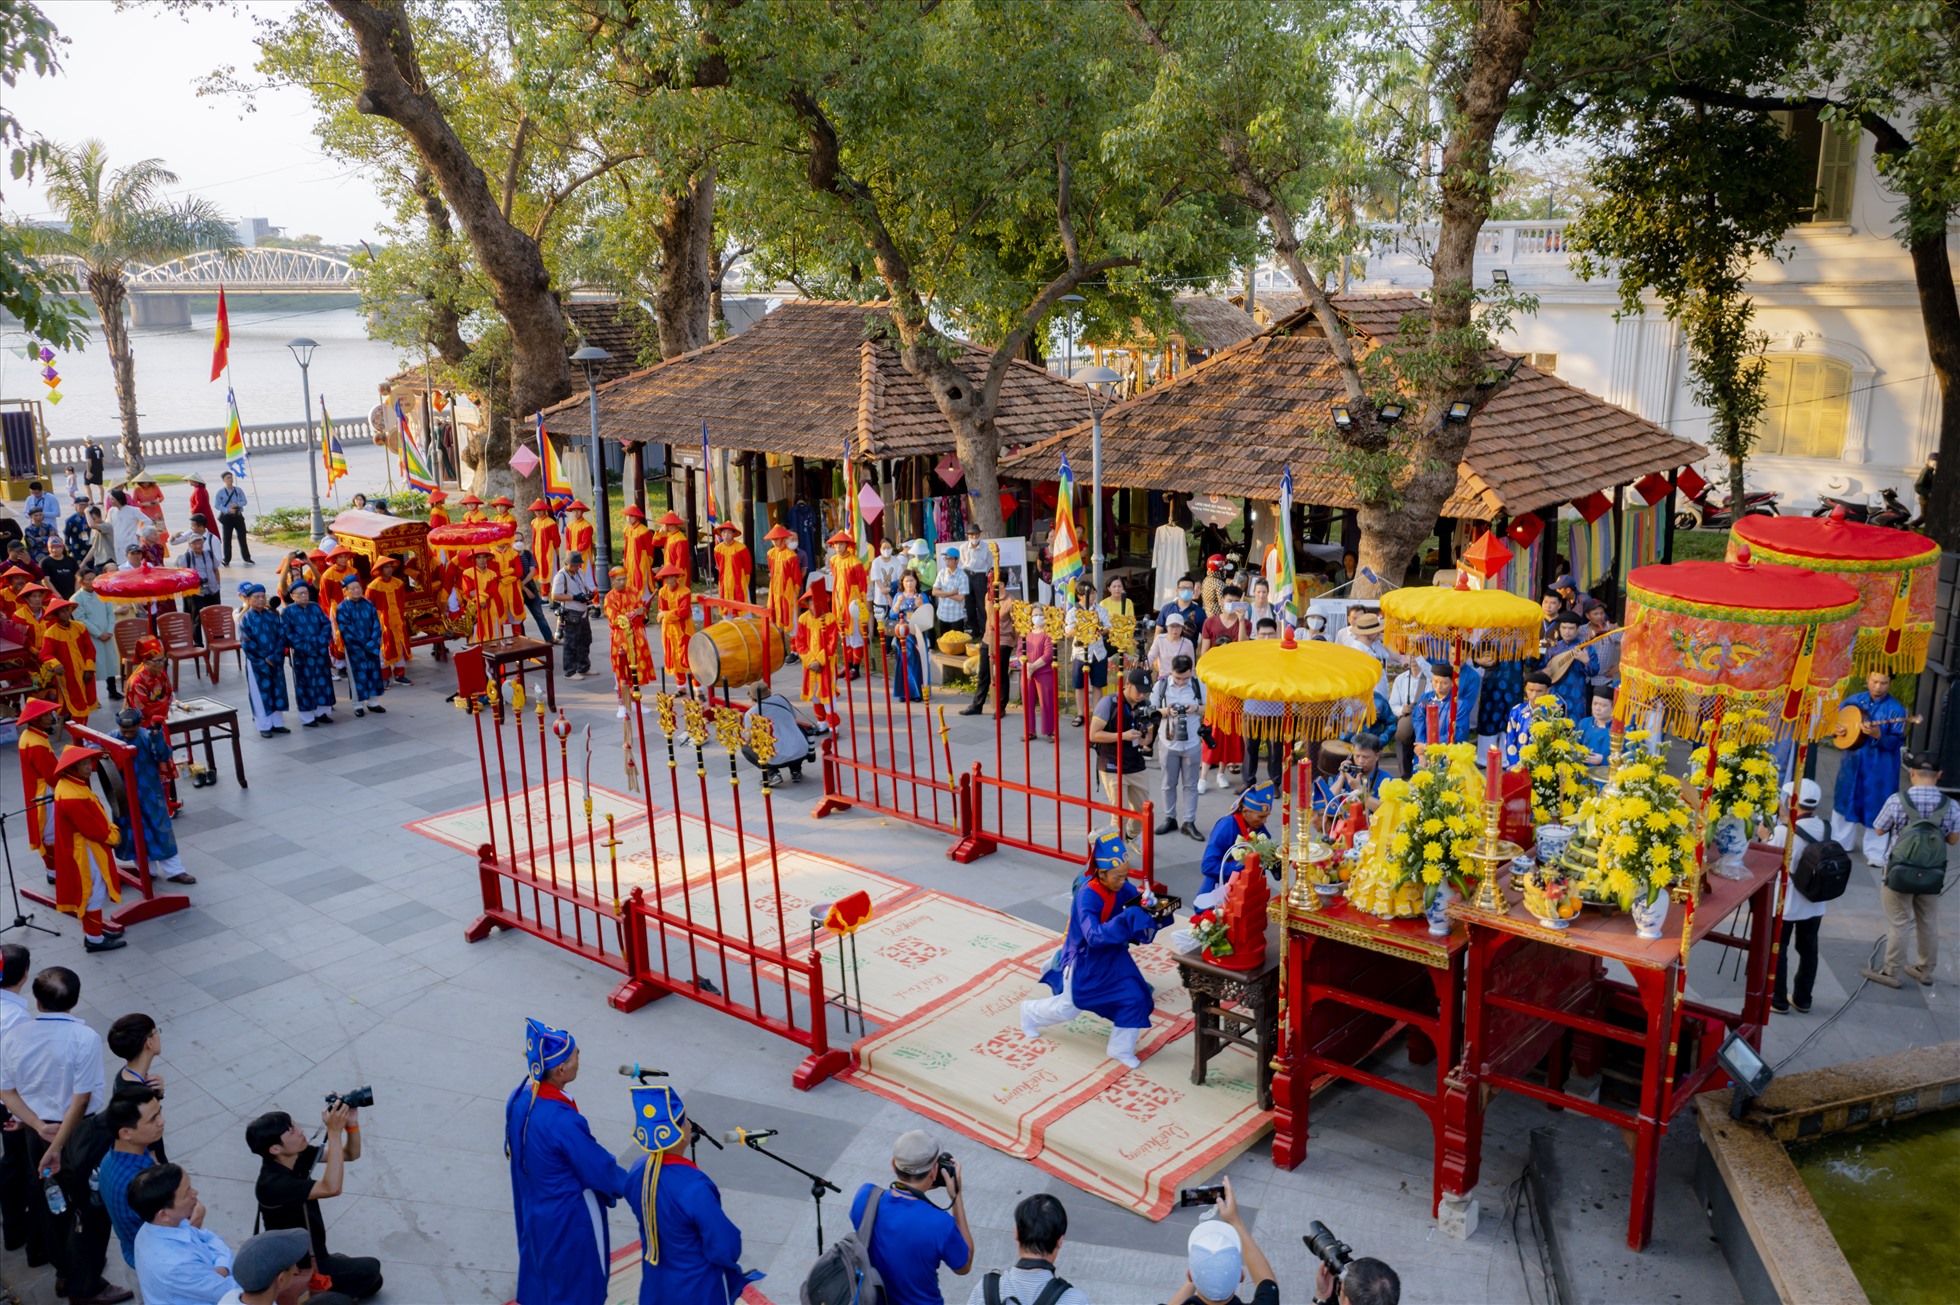 Lễ tế tổ Bách nghệ và Lễ rước tôn vinh nghề tại Festival Nghề truyền thống Huế là chương trình cuối cùng trước khi bế mạc Festival Nghề truyền thống Huế năm 2023. Tại đây các làng nghề, nghệ nhân sẽ được tôn vinh với những nghi thức trang trọng.